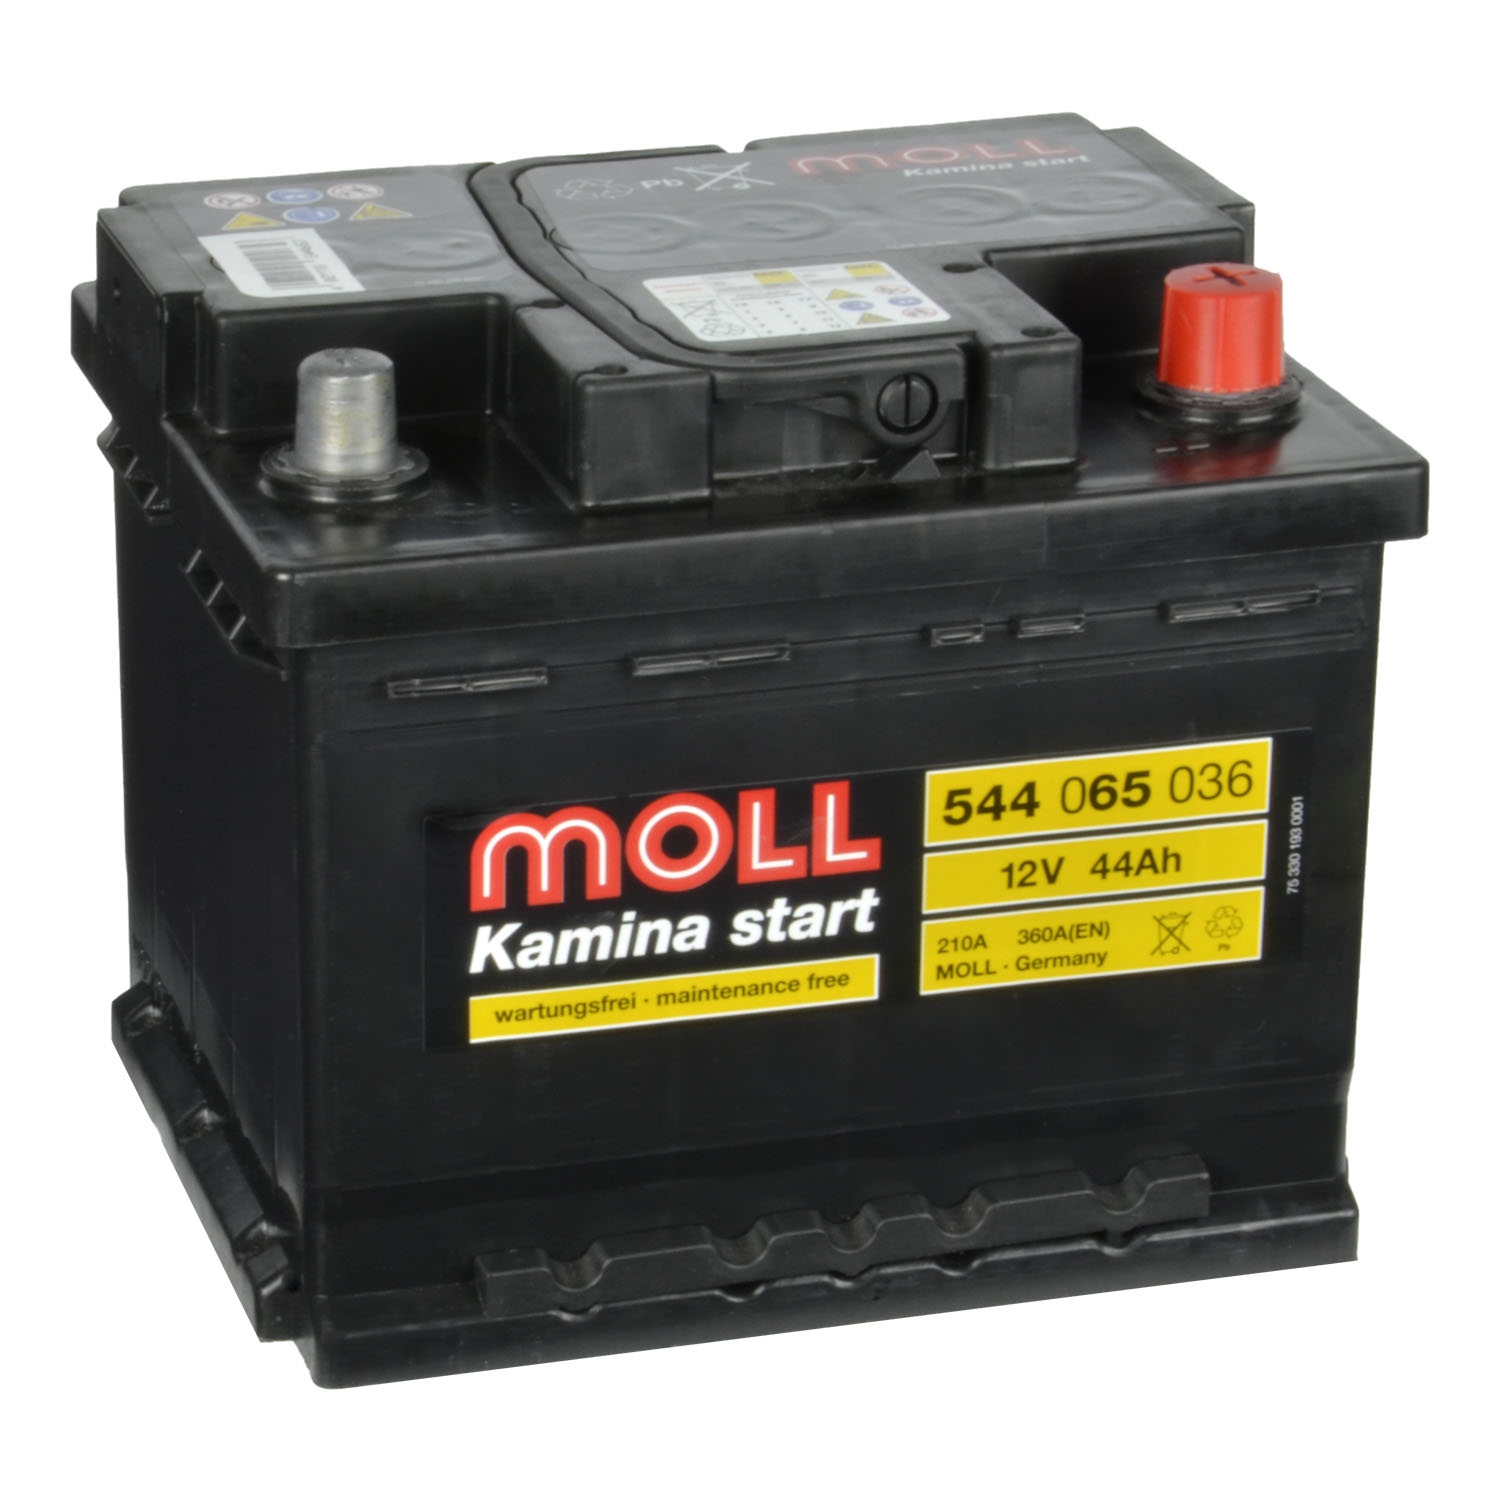 MOLL Kamina Start Autobatterie 544 059 036 12V 44Ah Chrysler